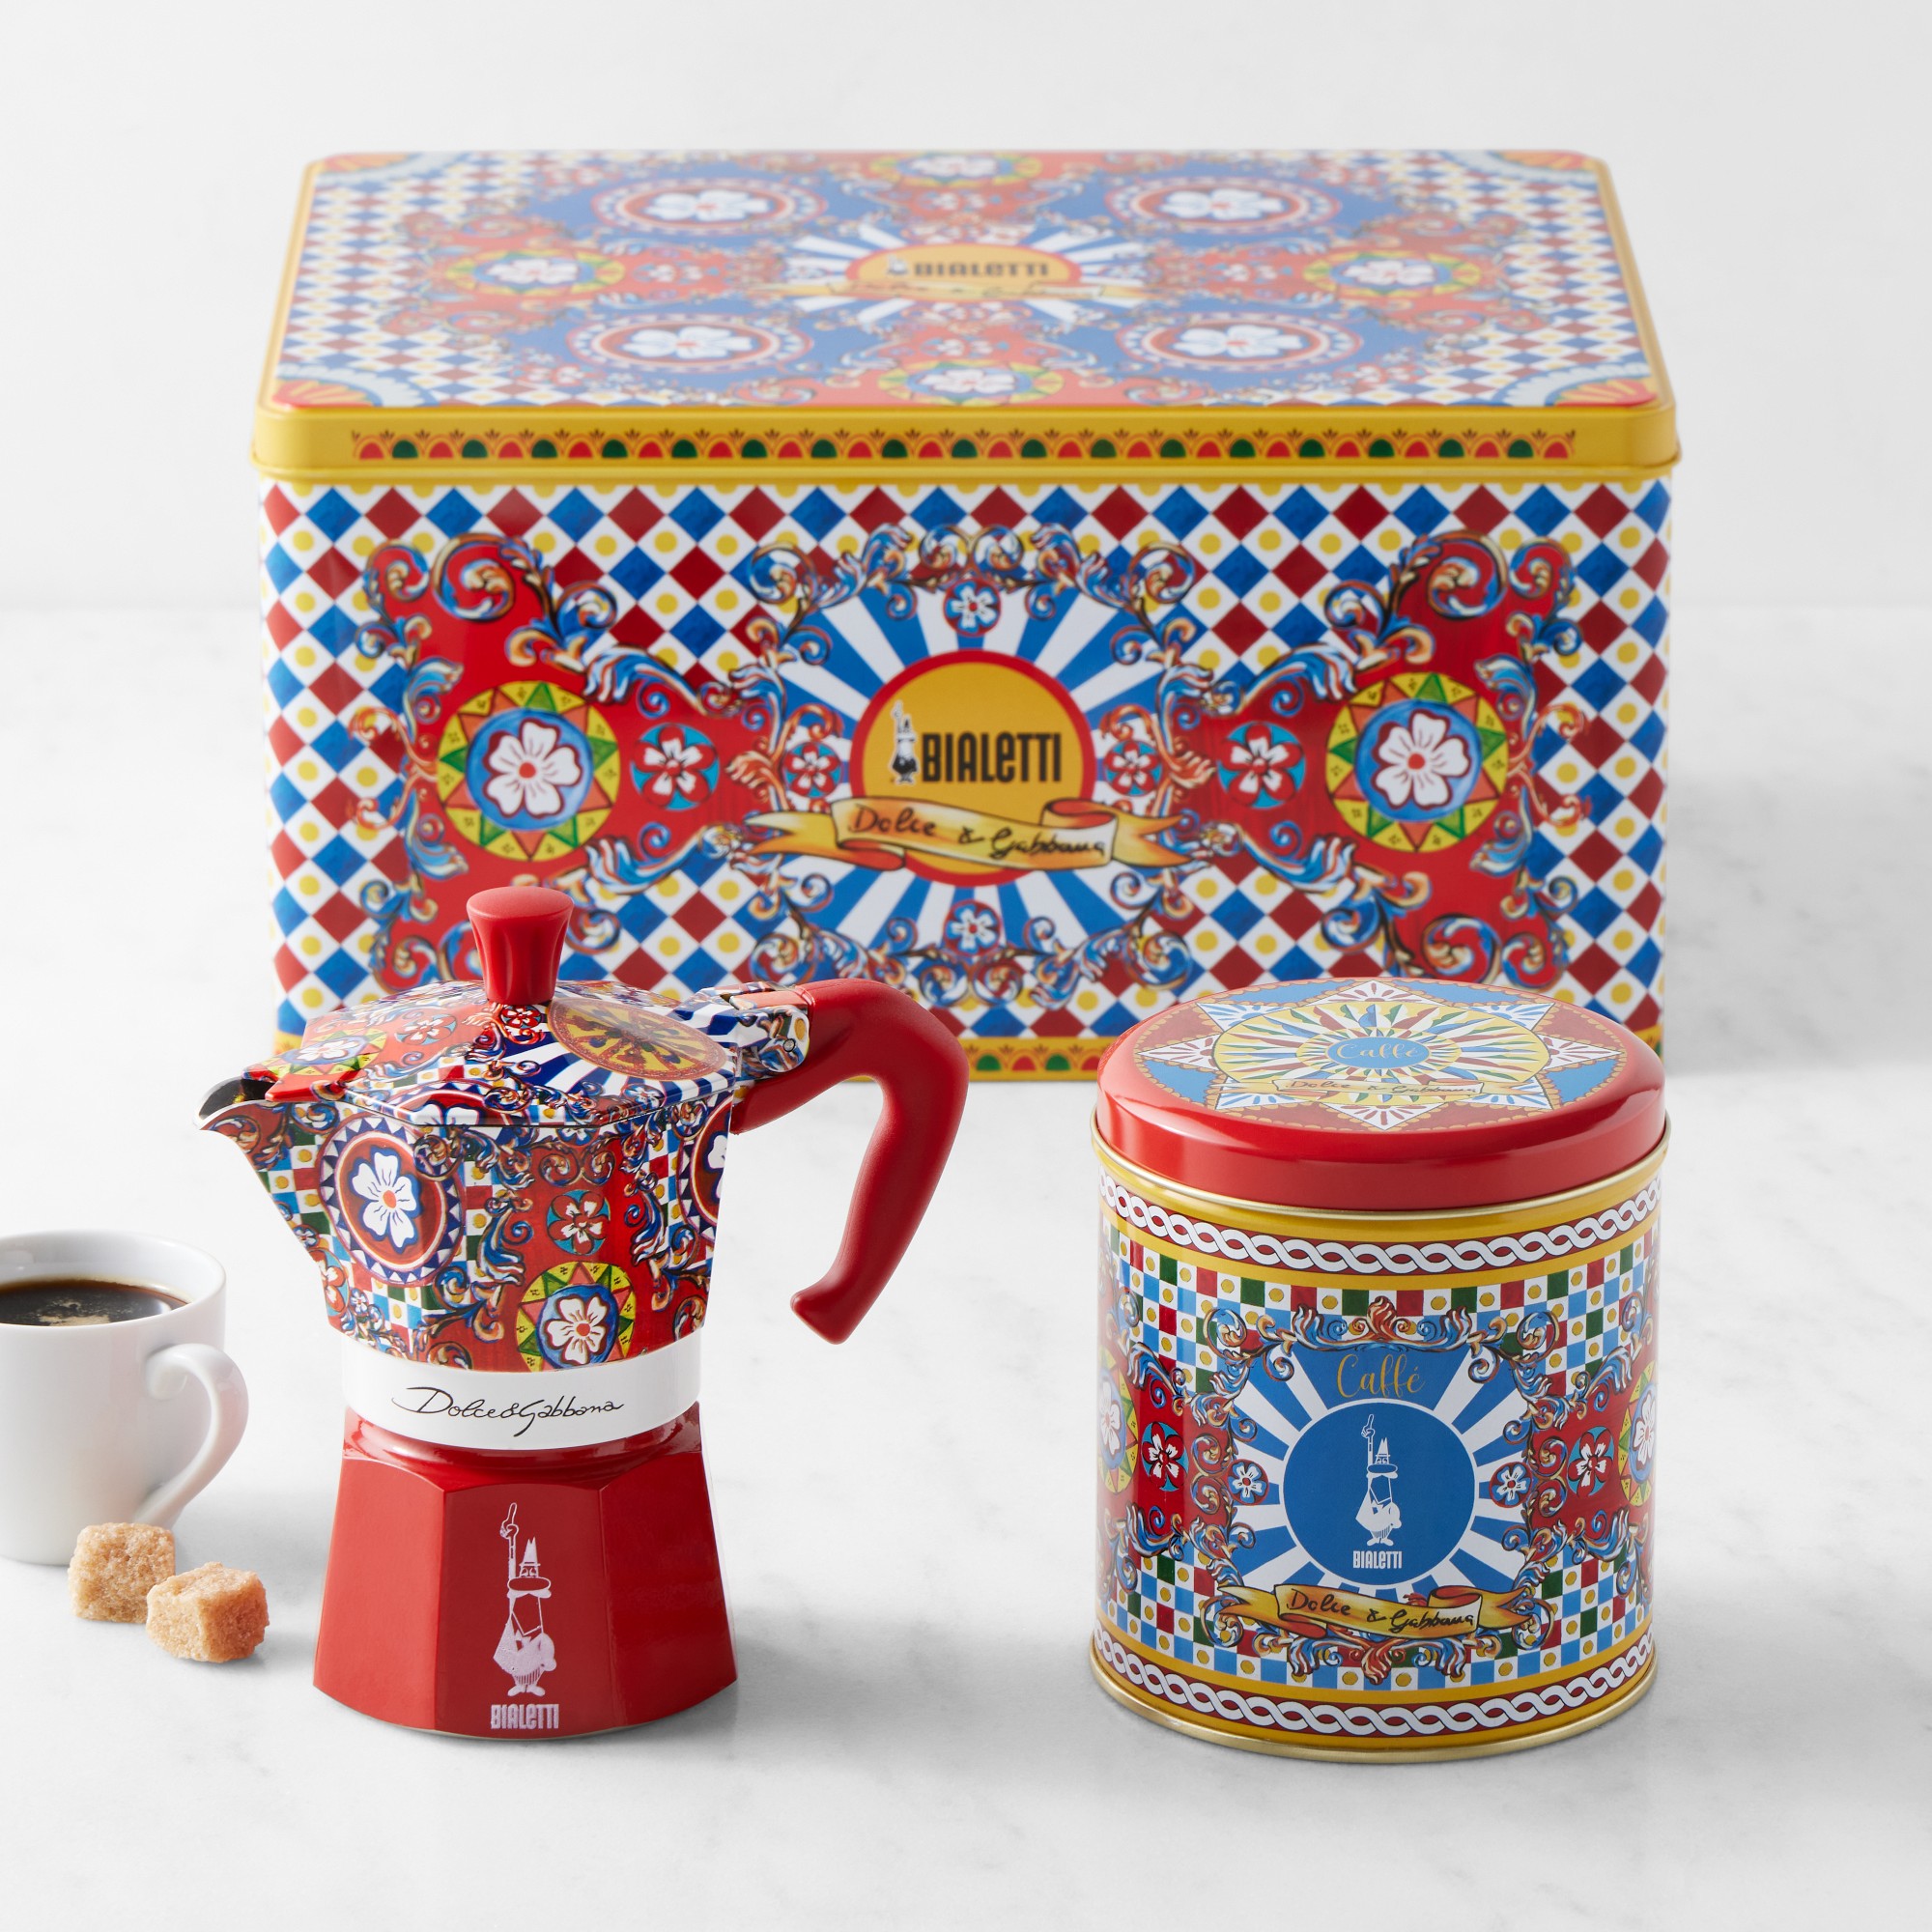 Bialetti Moka Dolce & Gabbana 3-Cup + 1 Irresistible Coffee Tin Gift Set, Carretto